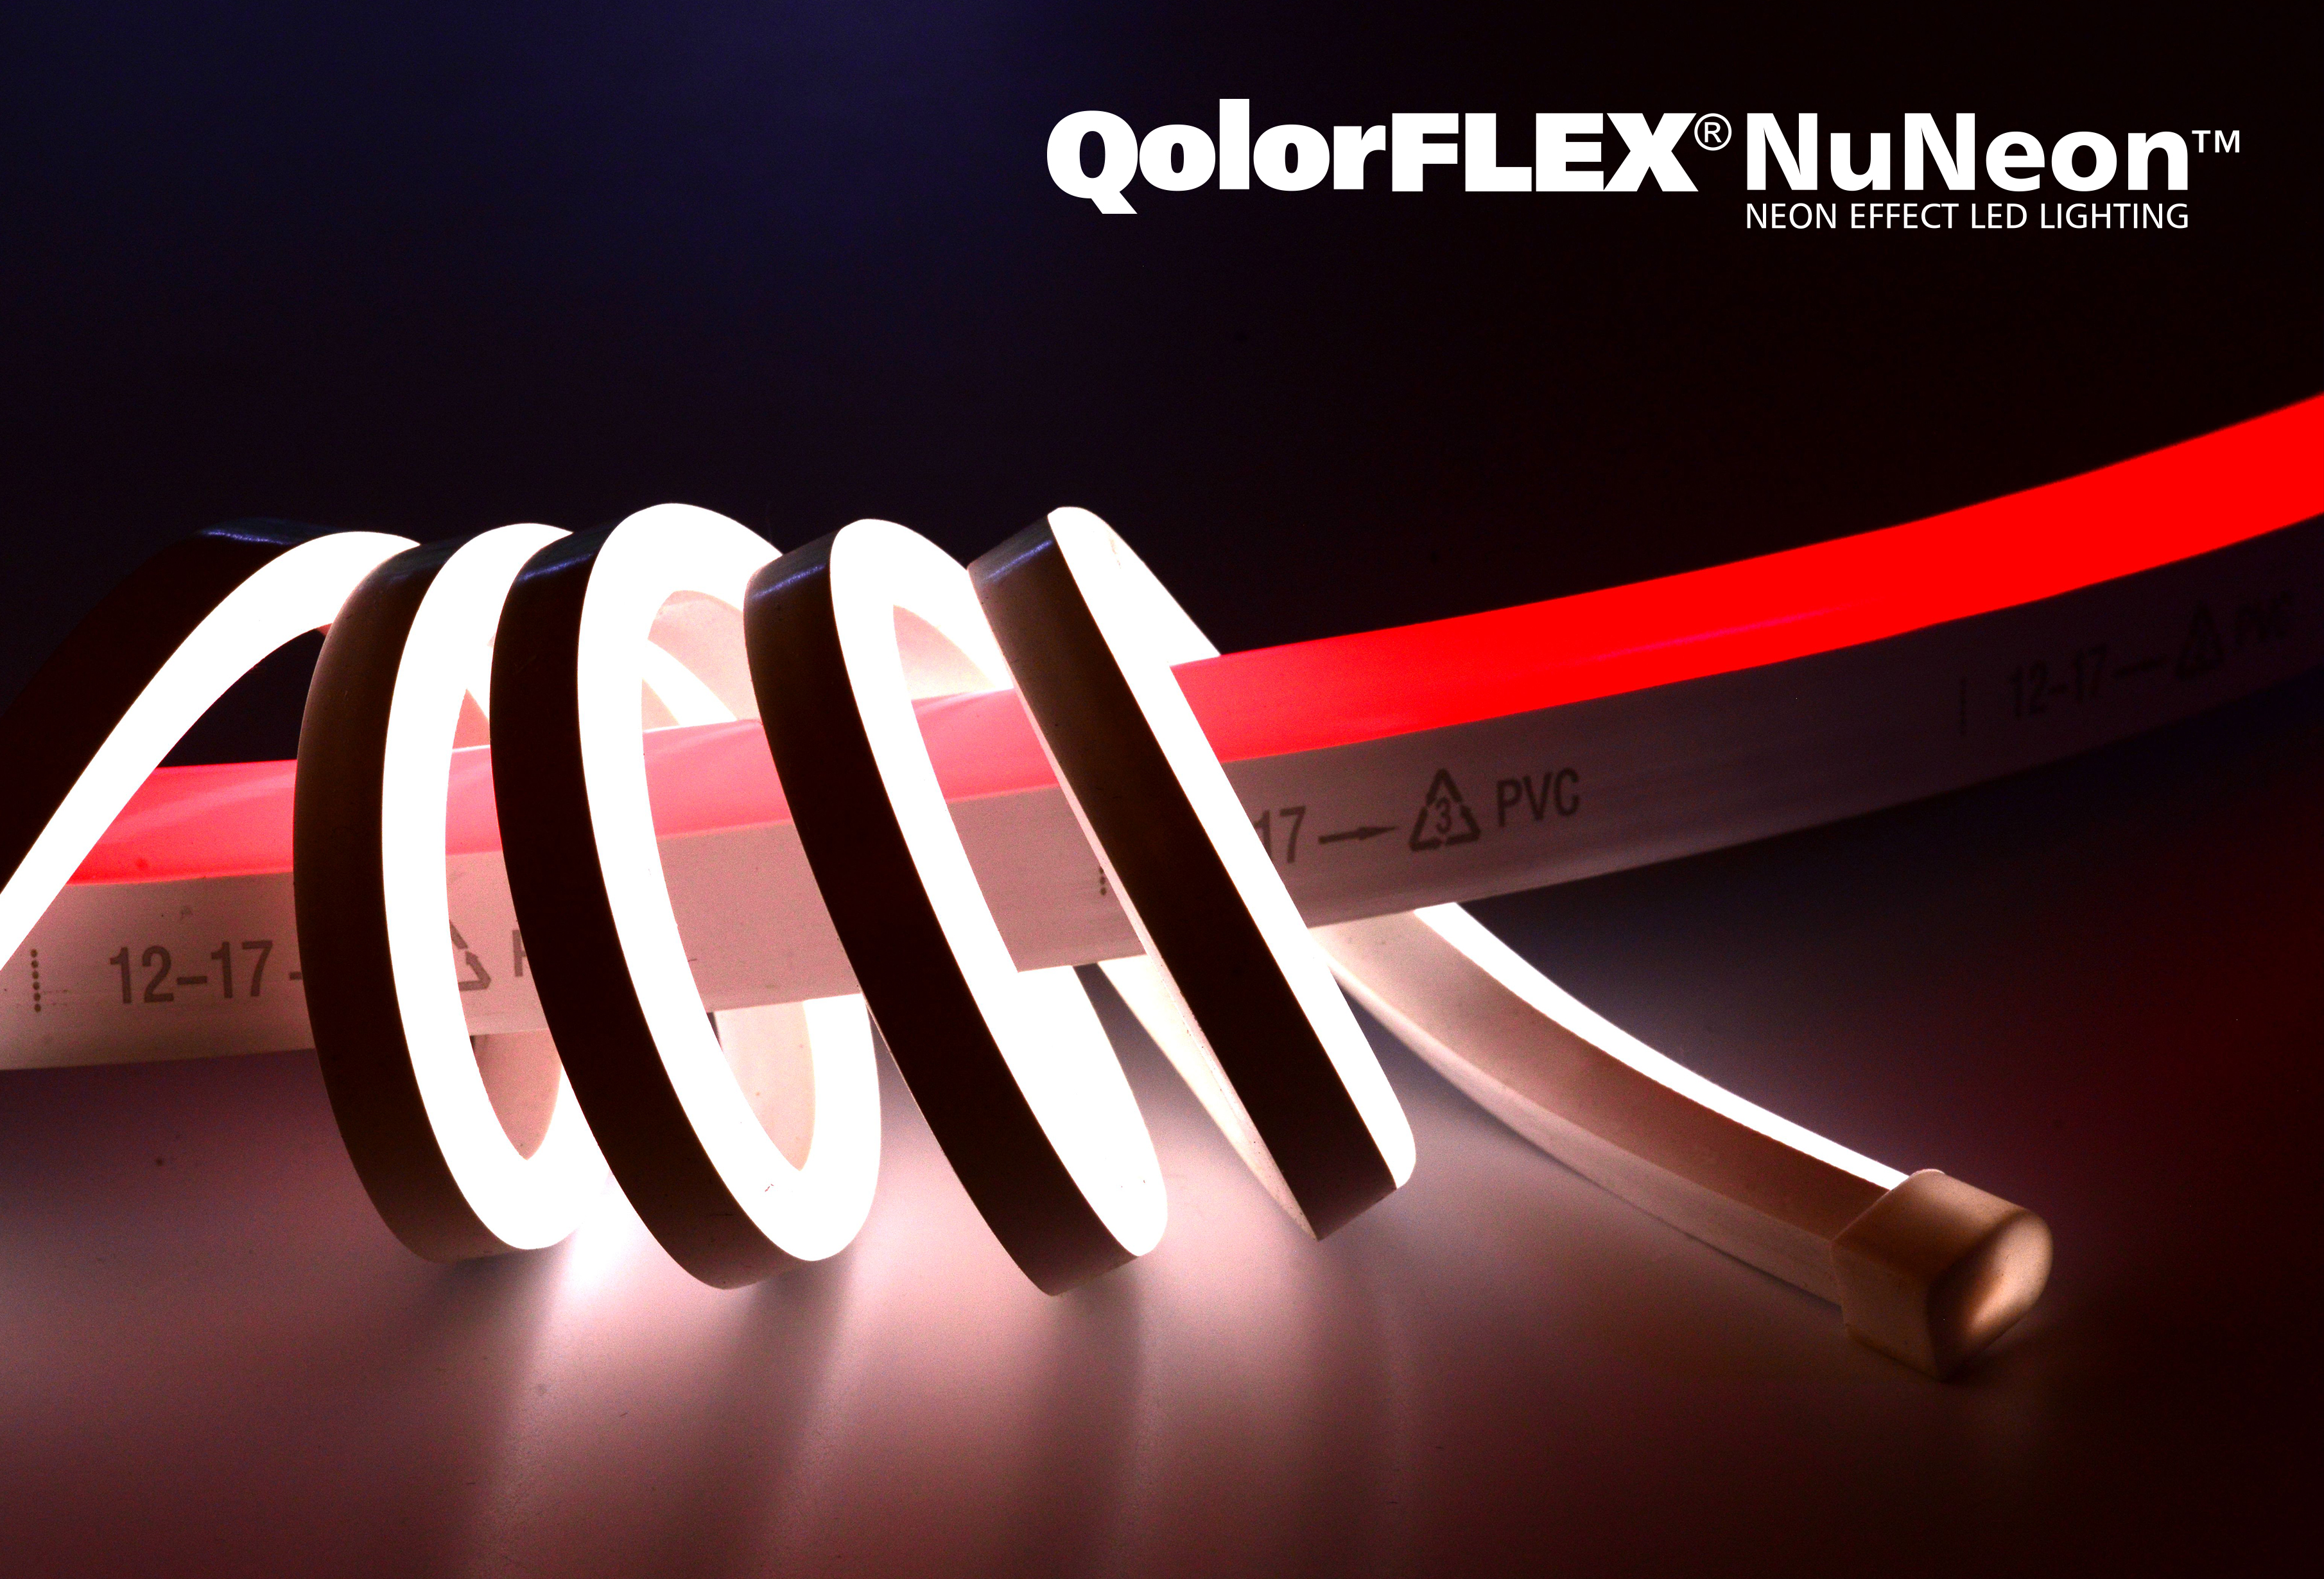 QolorFLEX NuNeon has a 12mm minimum bend radius